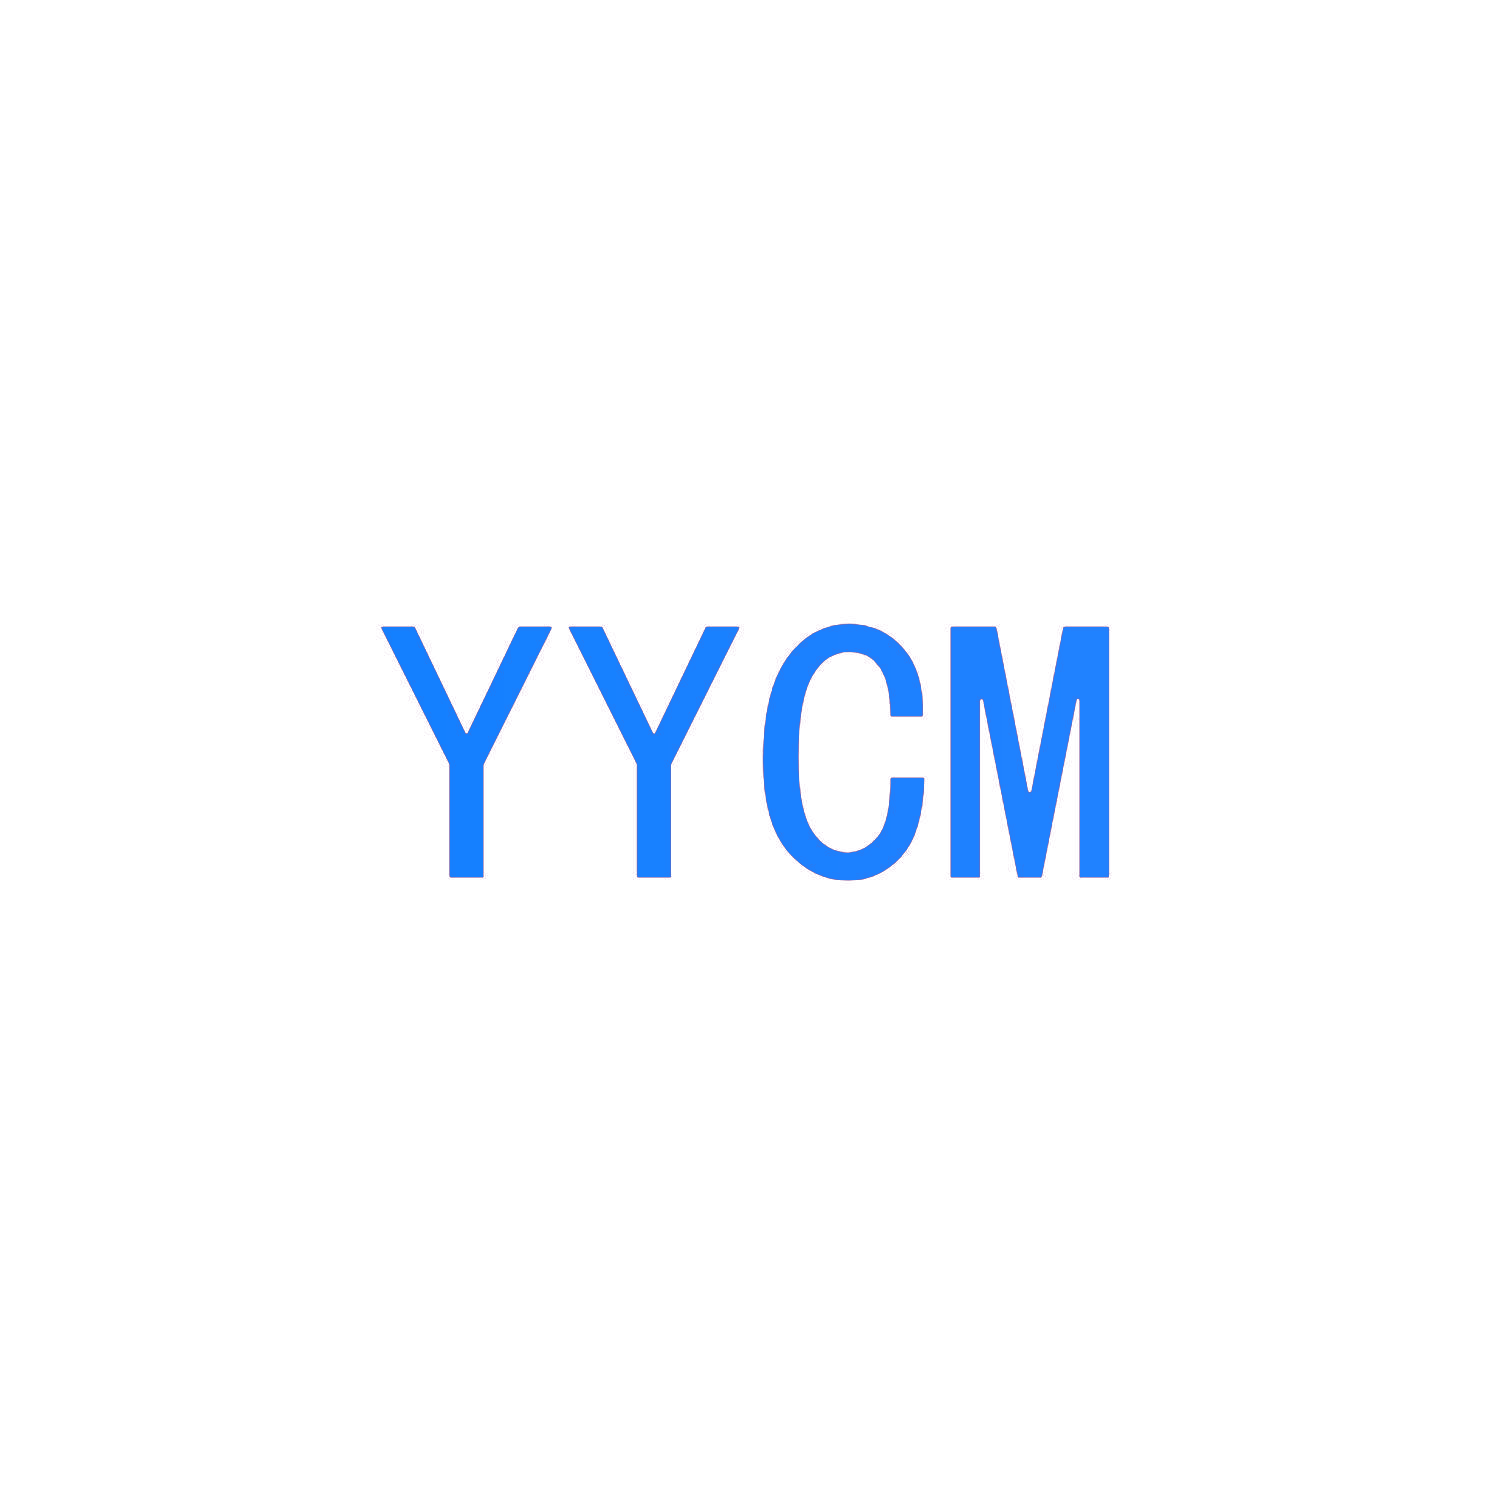 YYCM